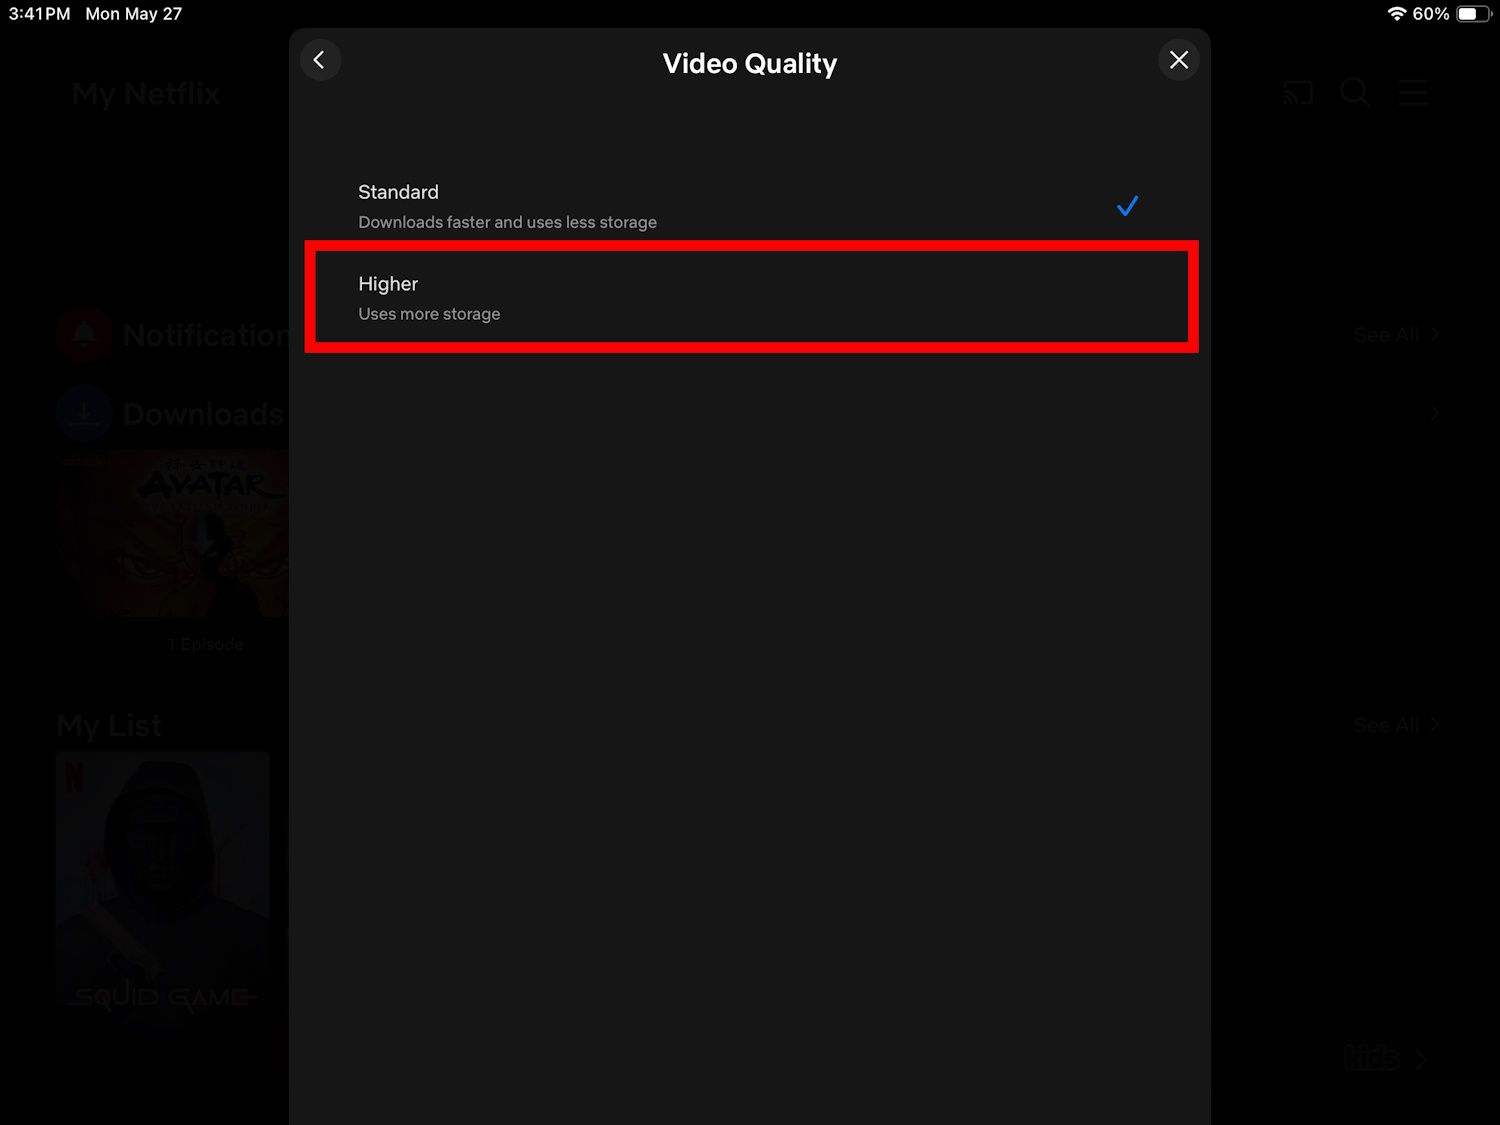 contorno de retângulo vermelho sobre opção de qualidade de vídeo de download mais alta em um ipad